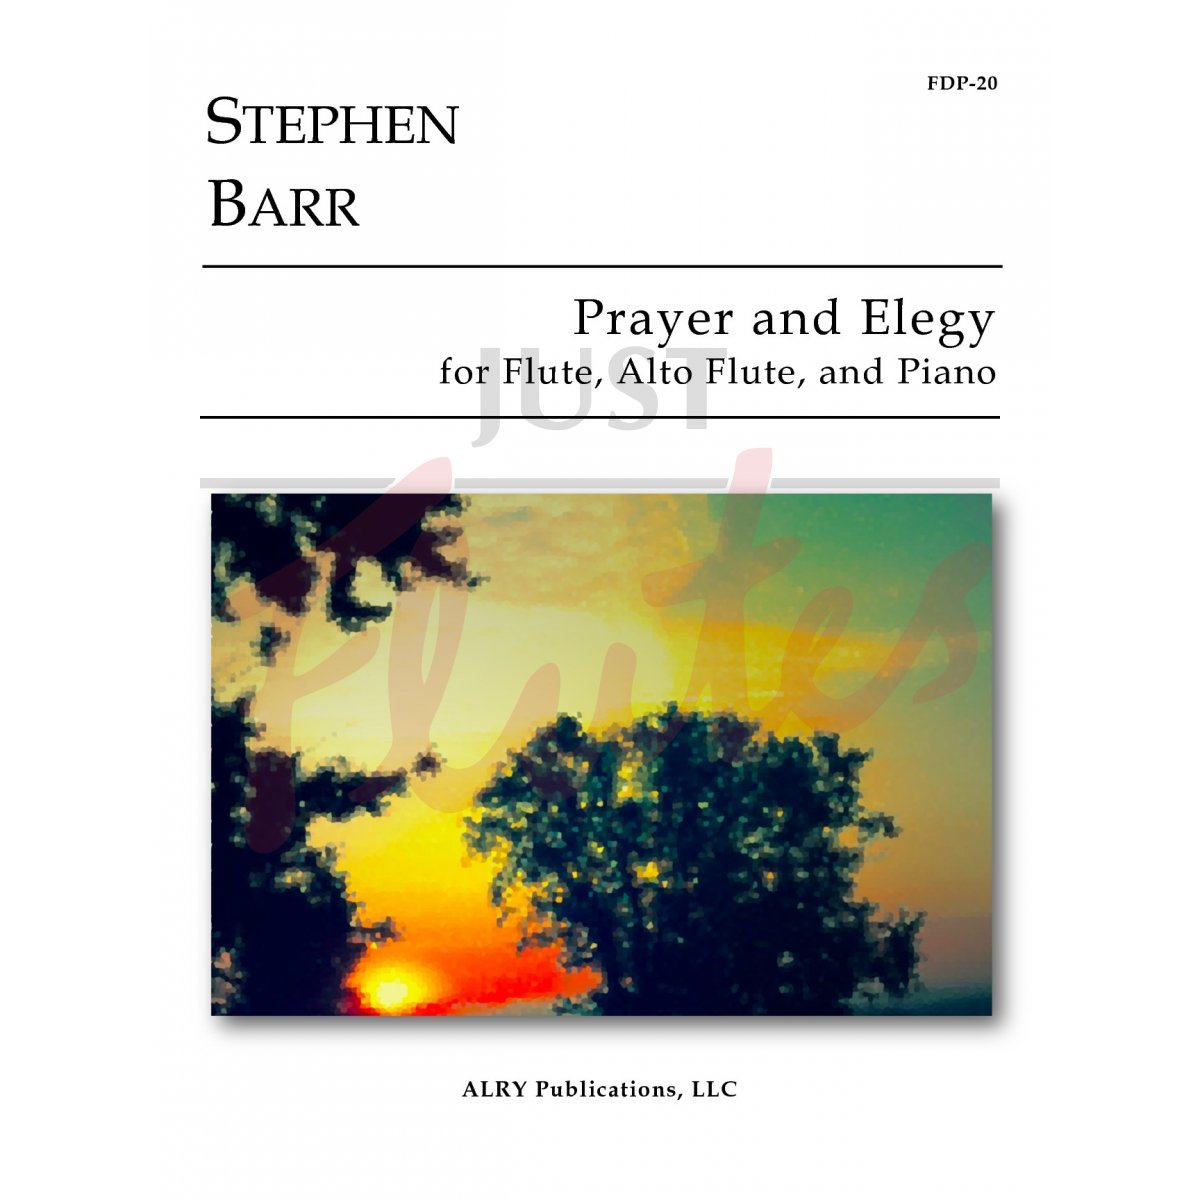 Prayer and Elegy for Flute, Alto Flute and Piano